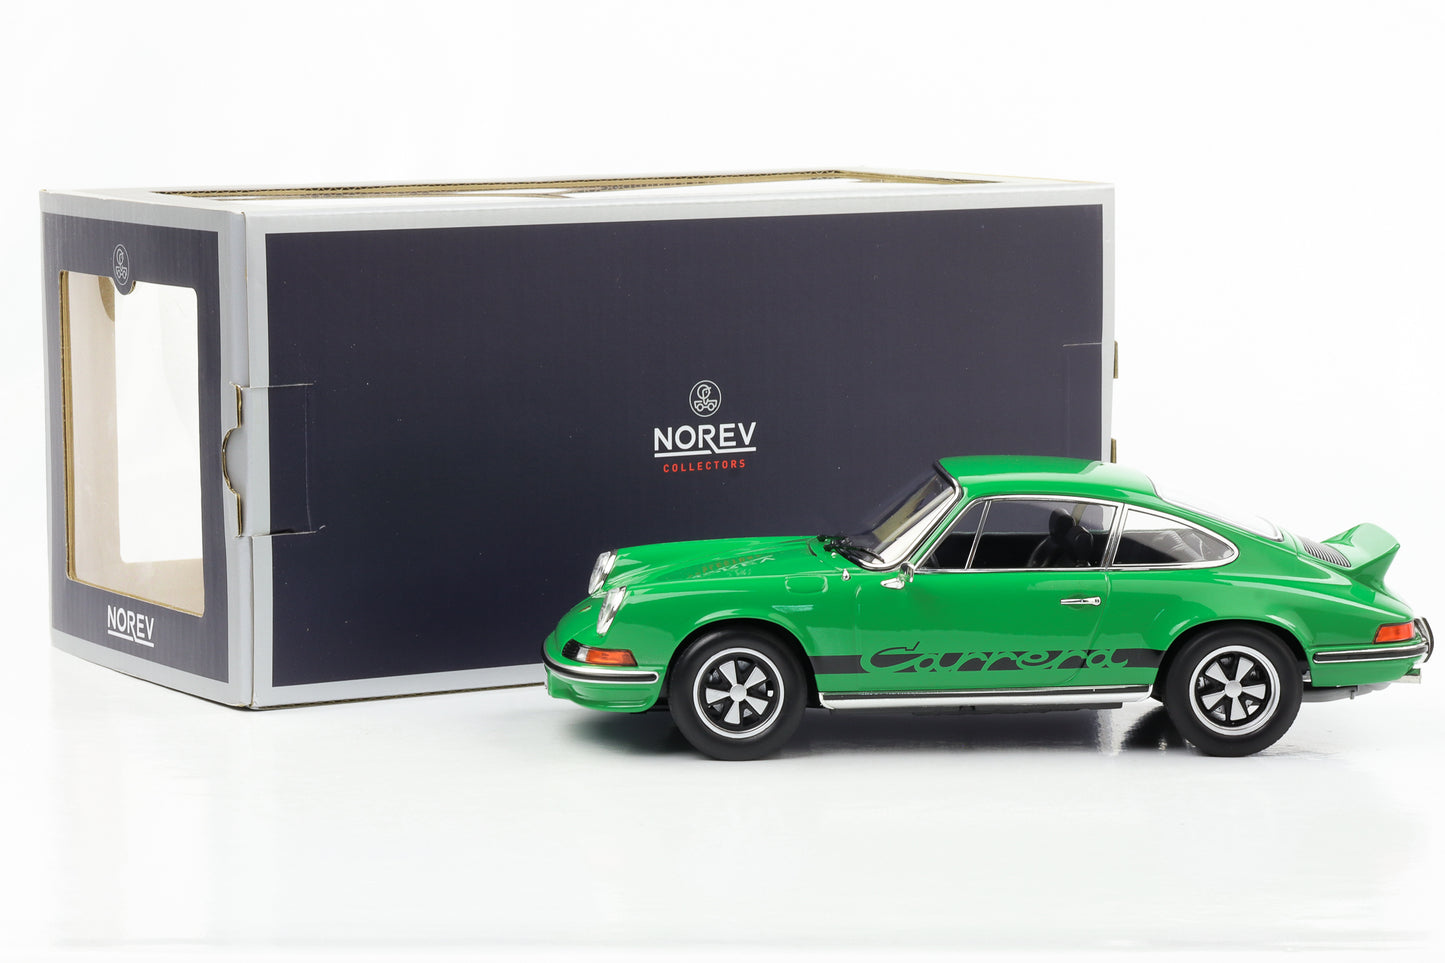 1:18 Porsche 911 RS Touring Carrera 1973 verde con decoración negra Norev